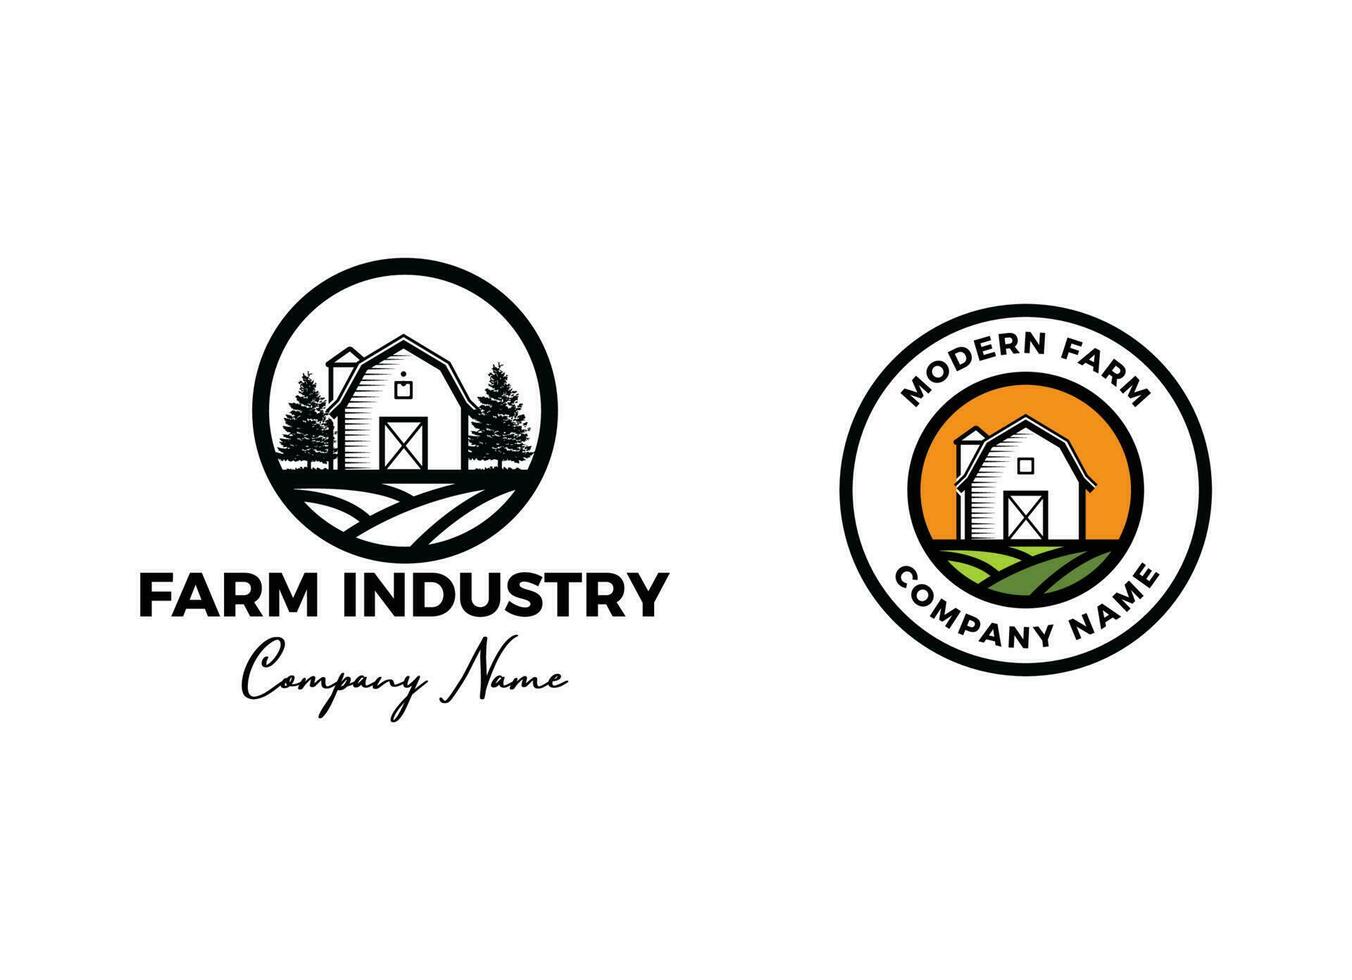 Vintage farm logo design - barn wood building house farm cow cattle vector